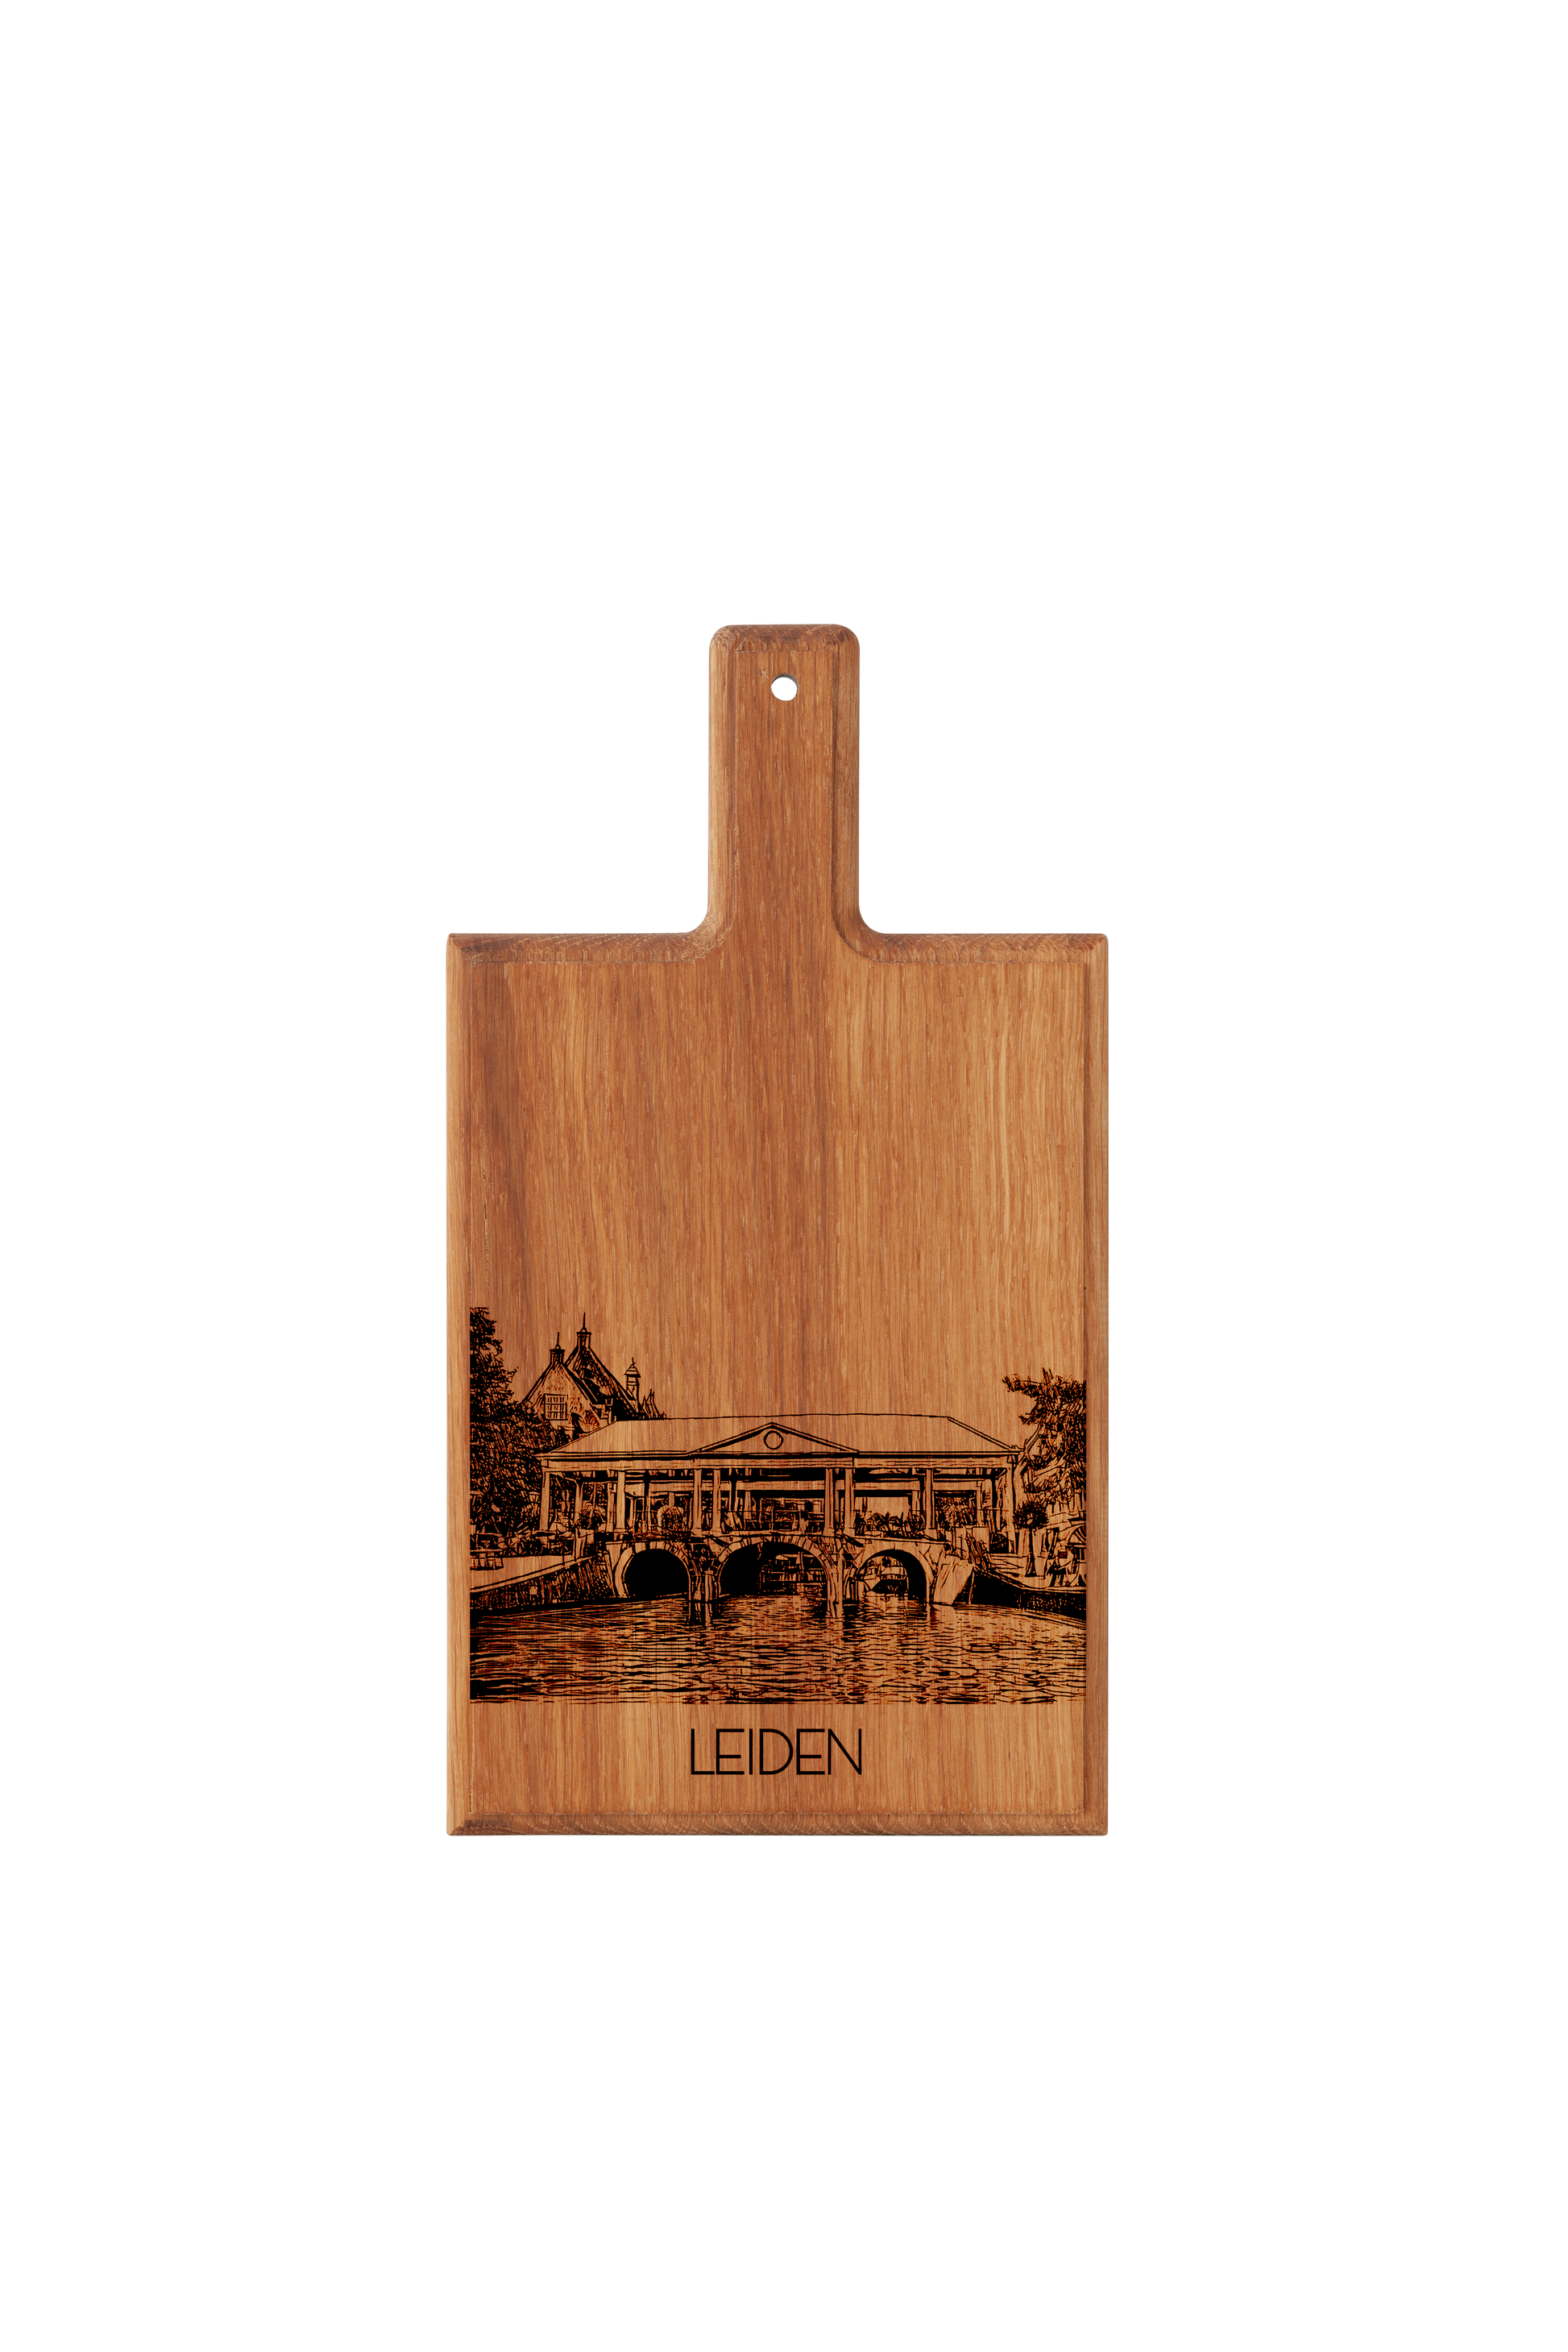 Oak Wood Variant of Handmade Koornbrug Leiden Engraved Cheese Board